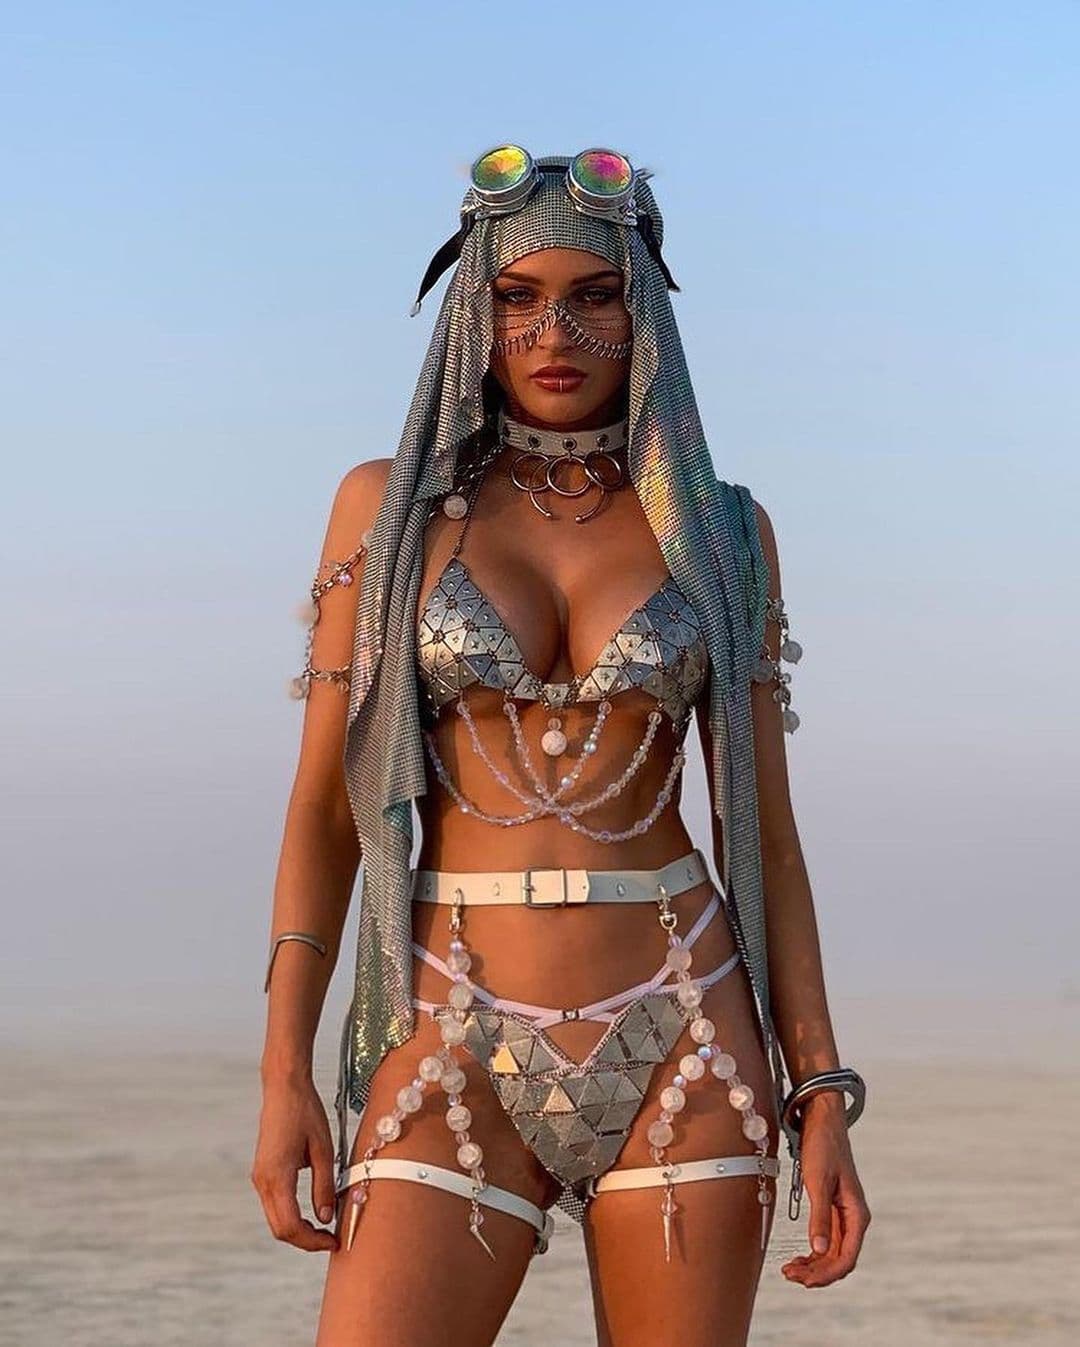 20 экстремально-потрясных нарядов участников эпичного фестиваля Burning Man ’22, которые восхитили окружающих 83